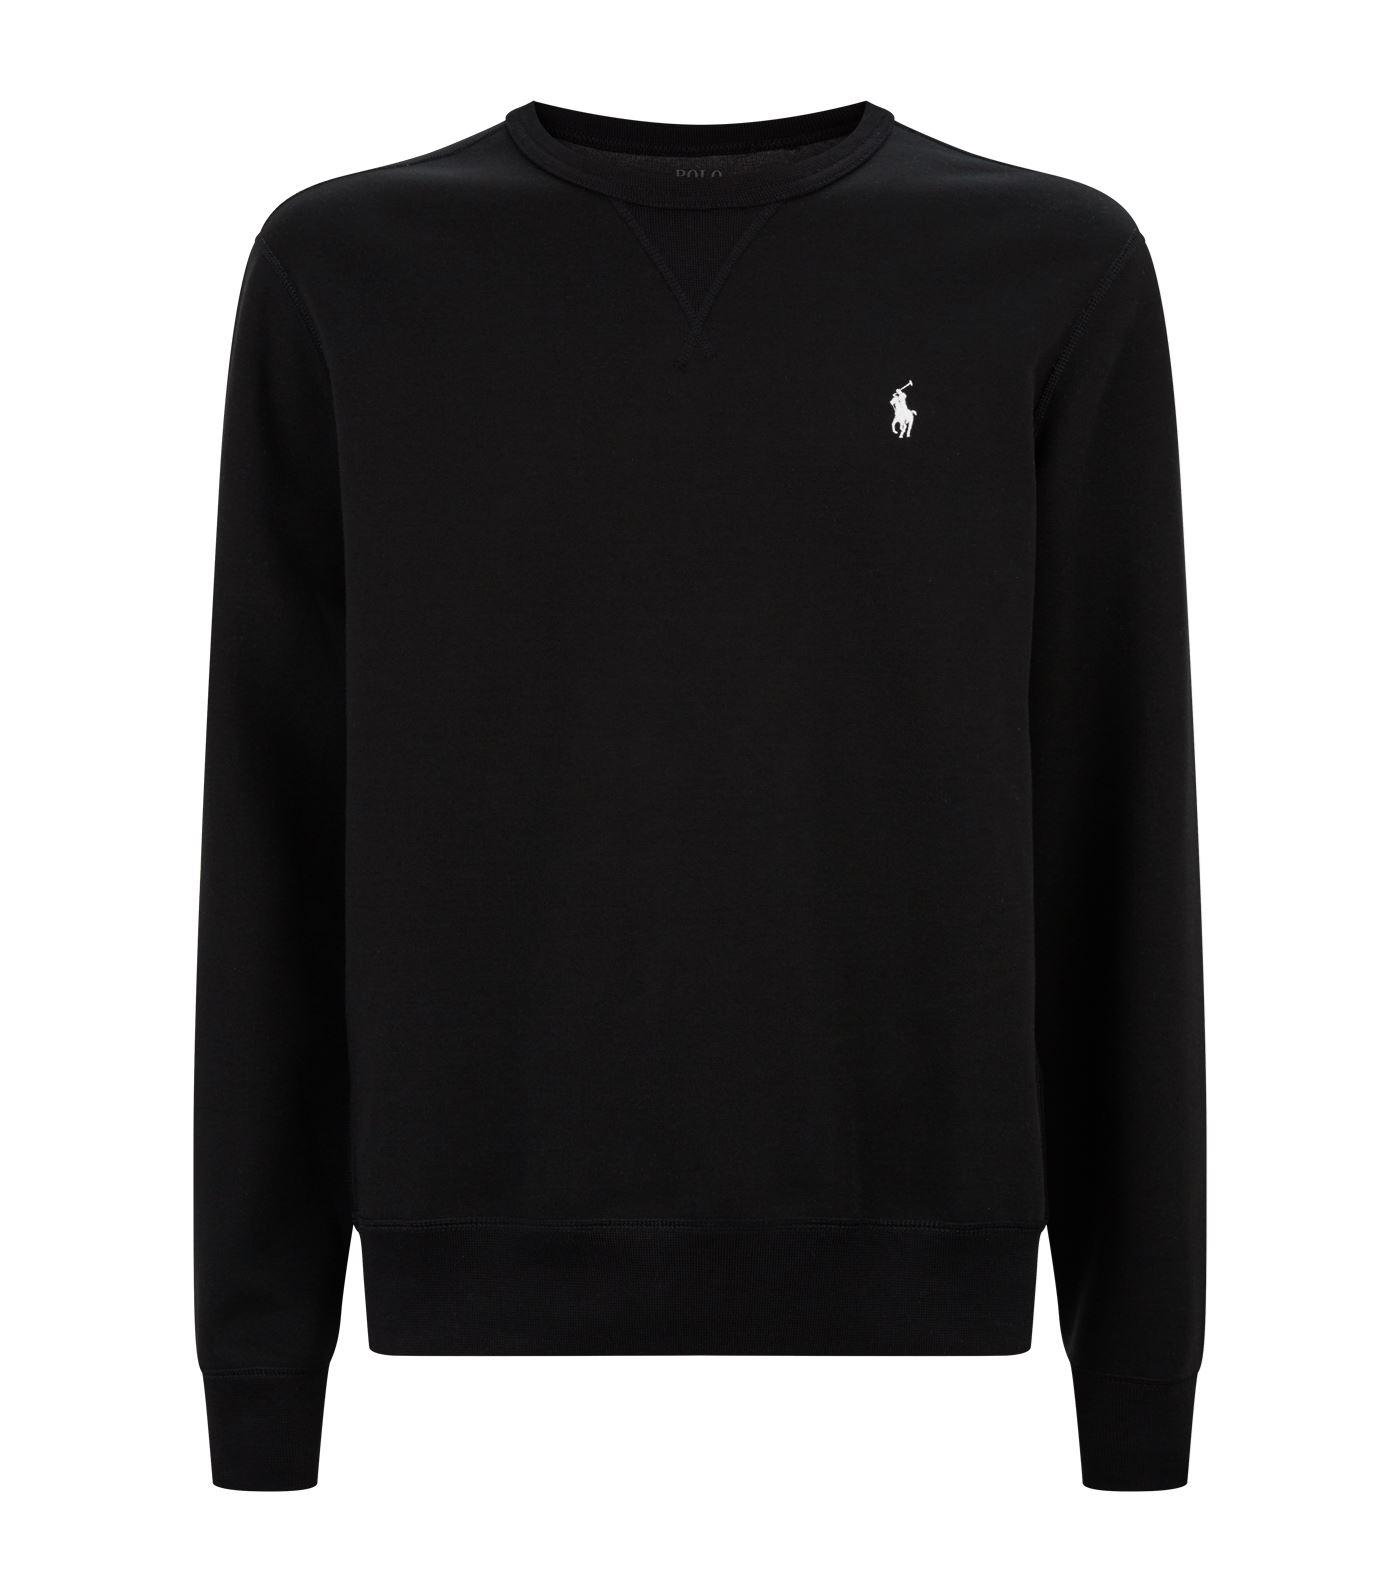 Polo Ralph Lauren Double-knit Sweatshirt in Black for Men - Lyst